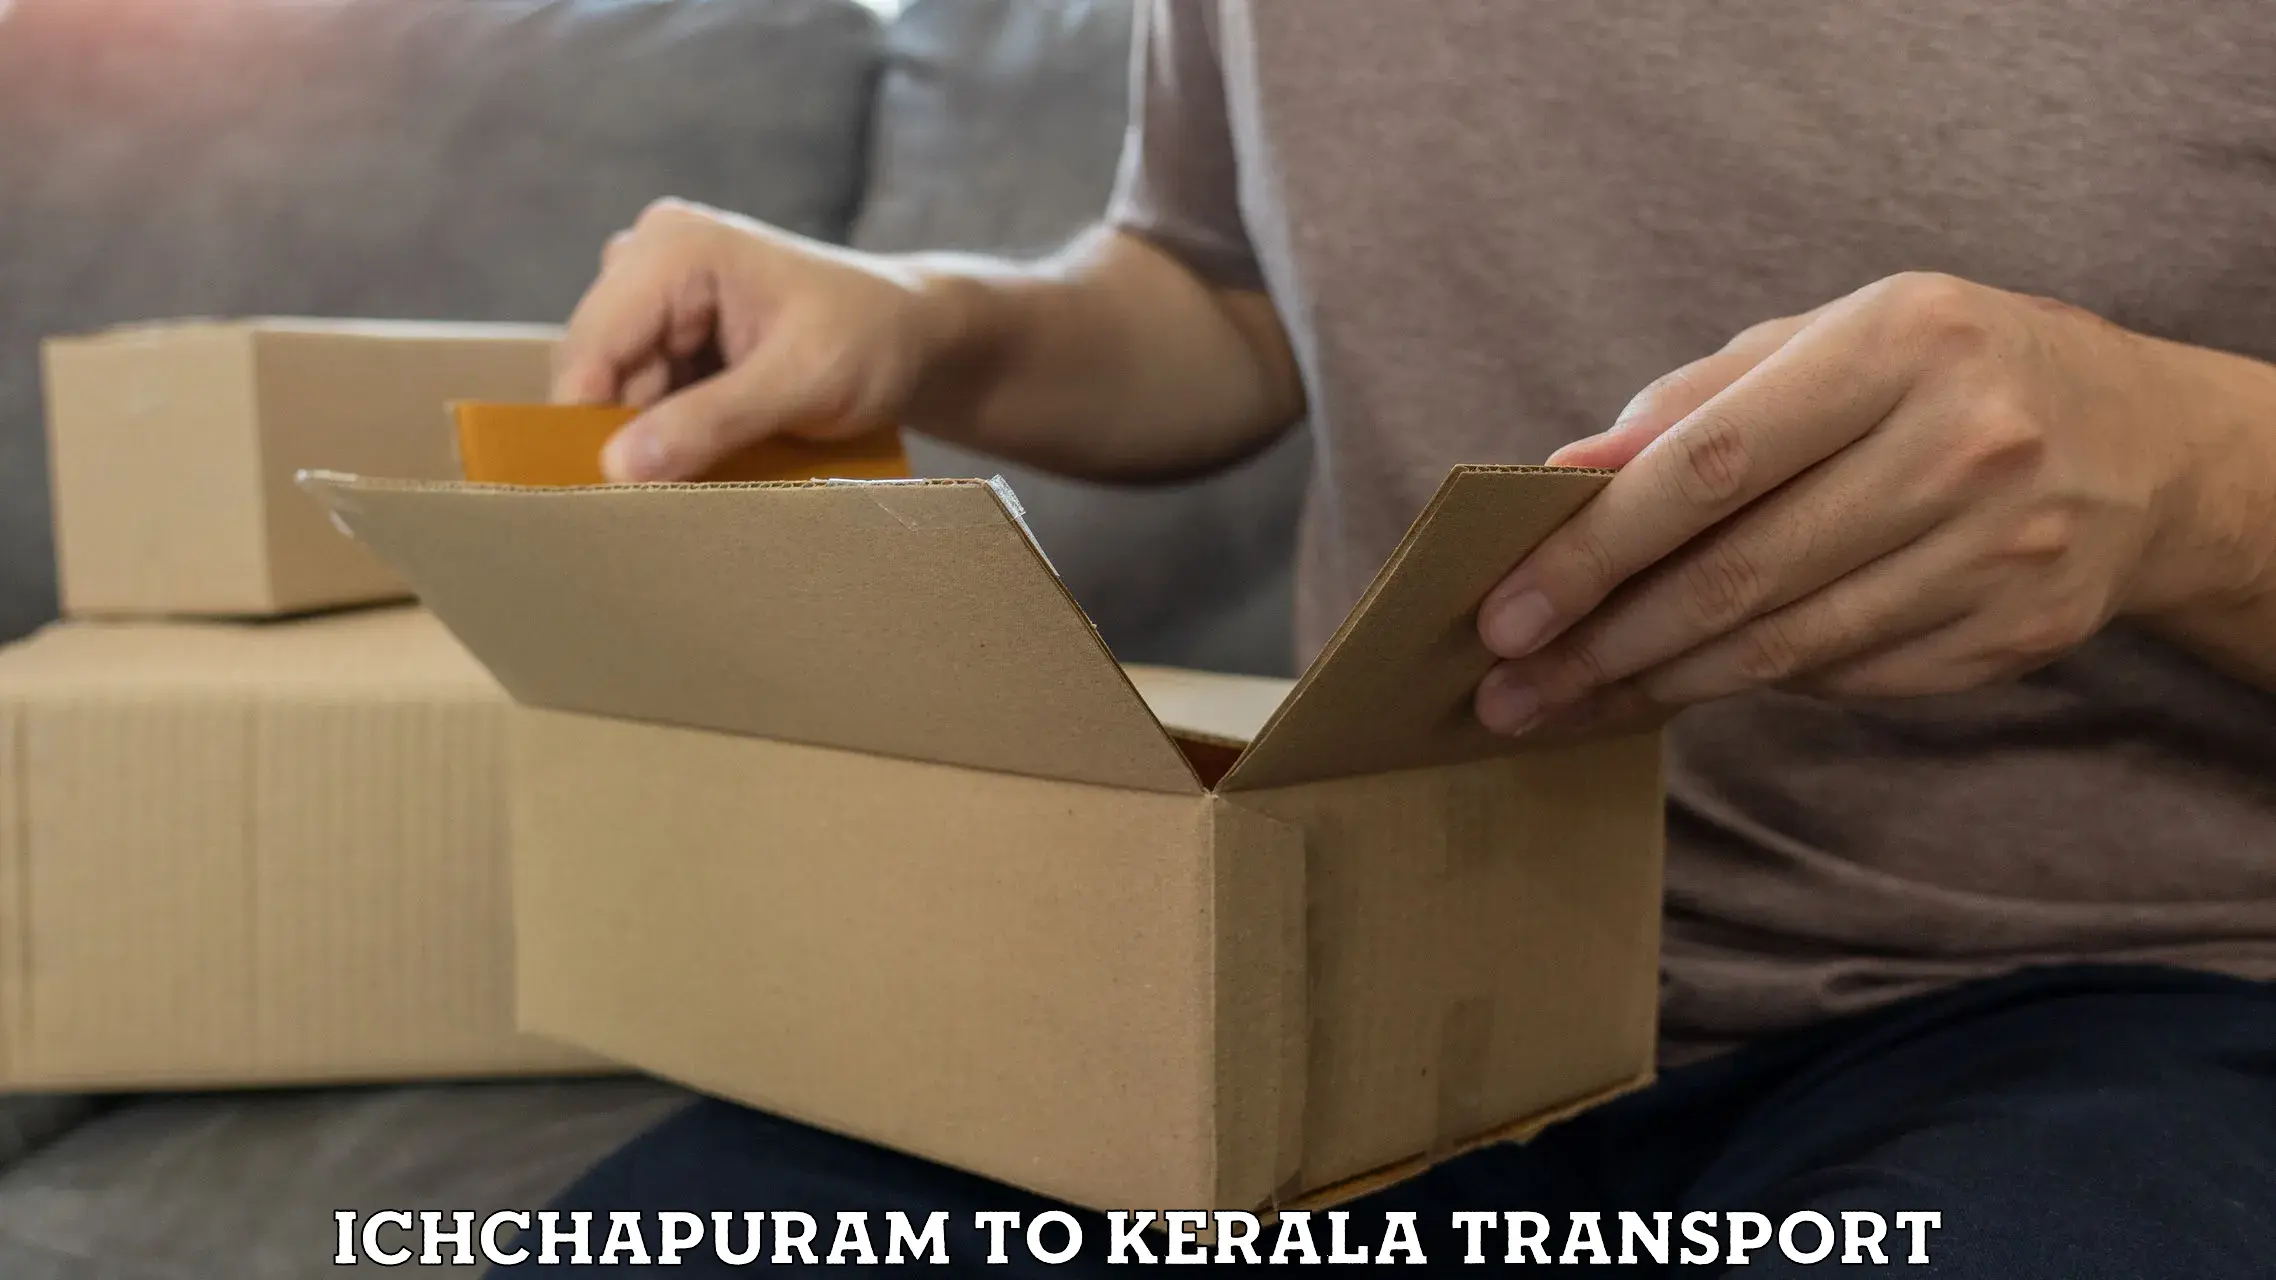 Express transport services in Ichchapuram to Kalpetta